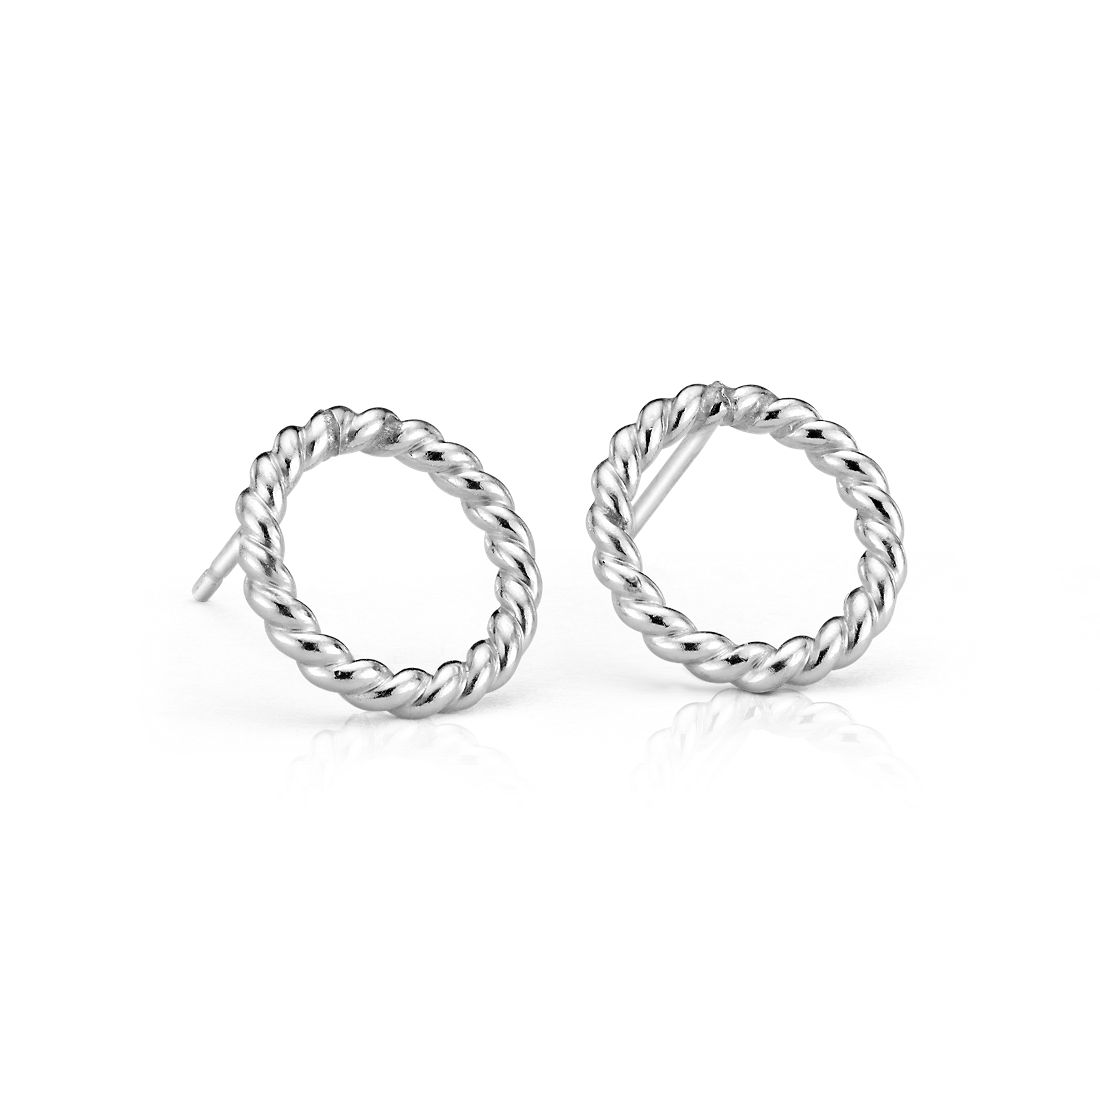 Rope Circle Stud Earrings in Sterling Silver